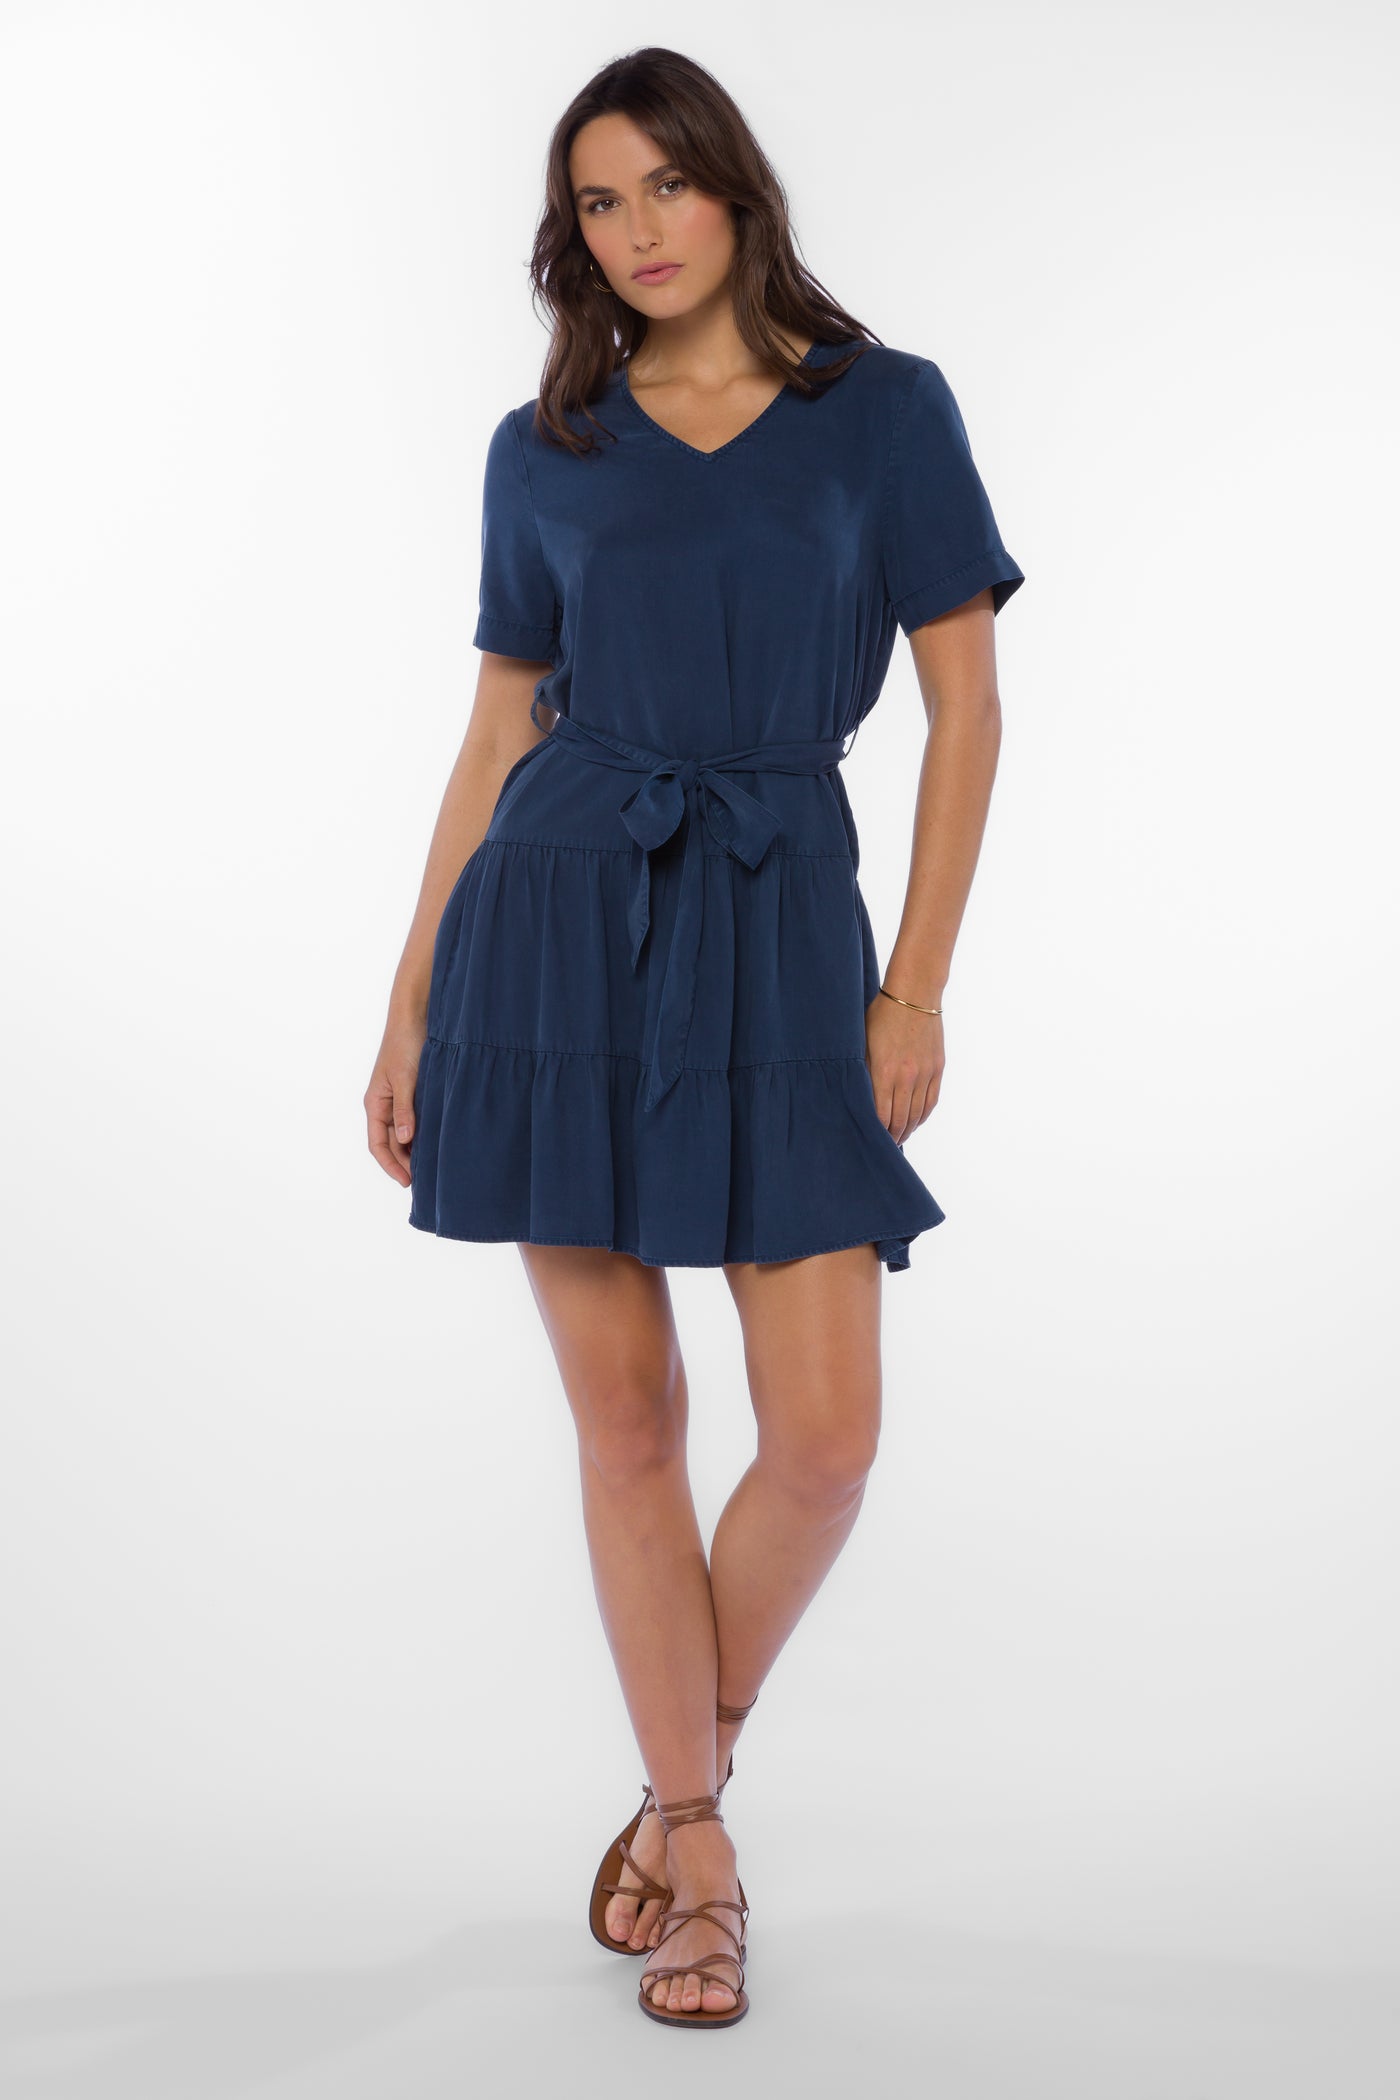 Arrow French Navy Dress - Dresses - Velvet Heart Clothing